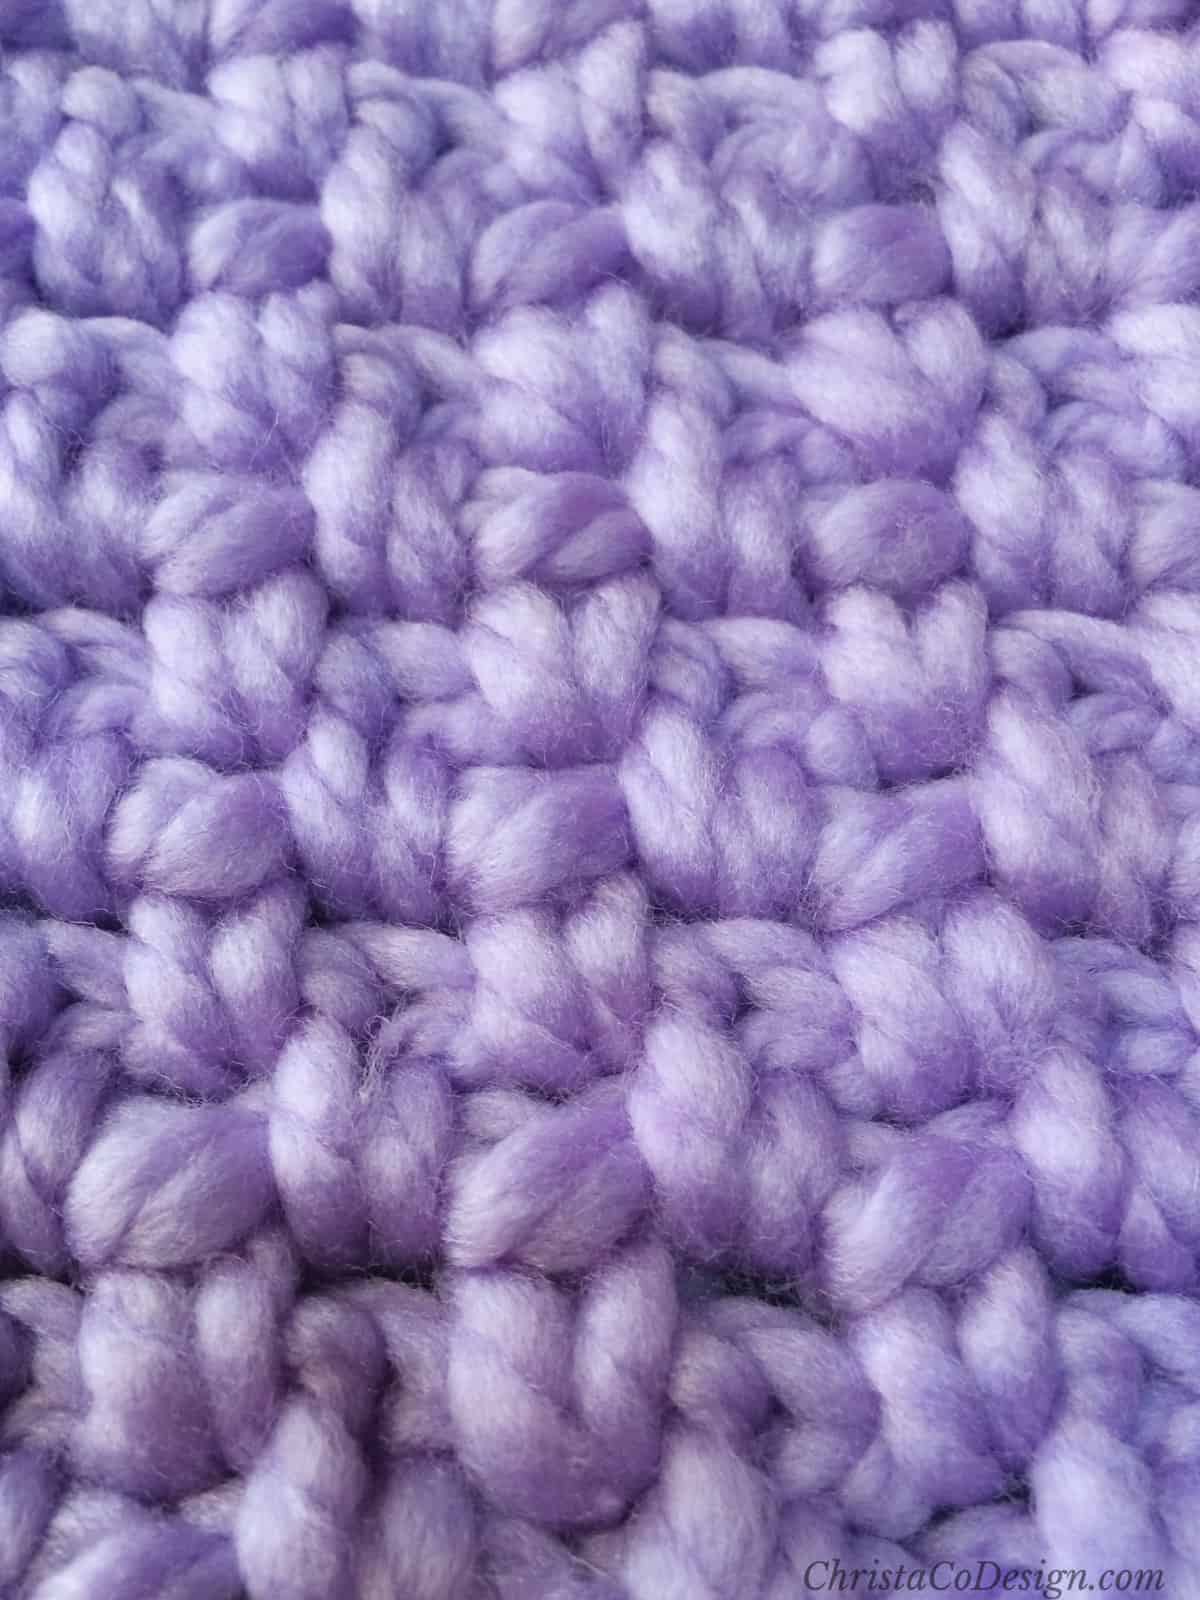 Crochet moss stitch in purple yarn.